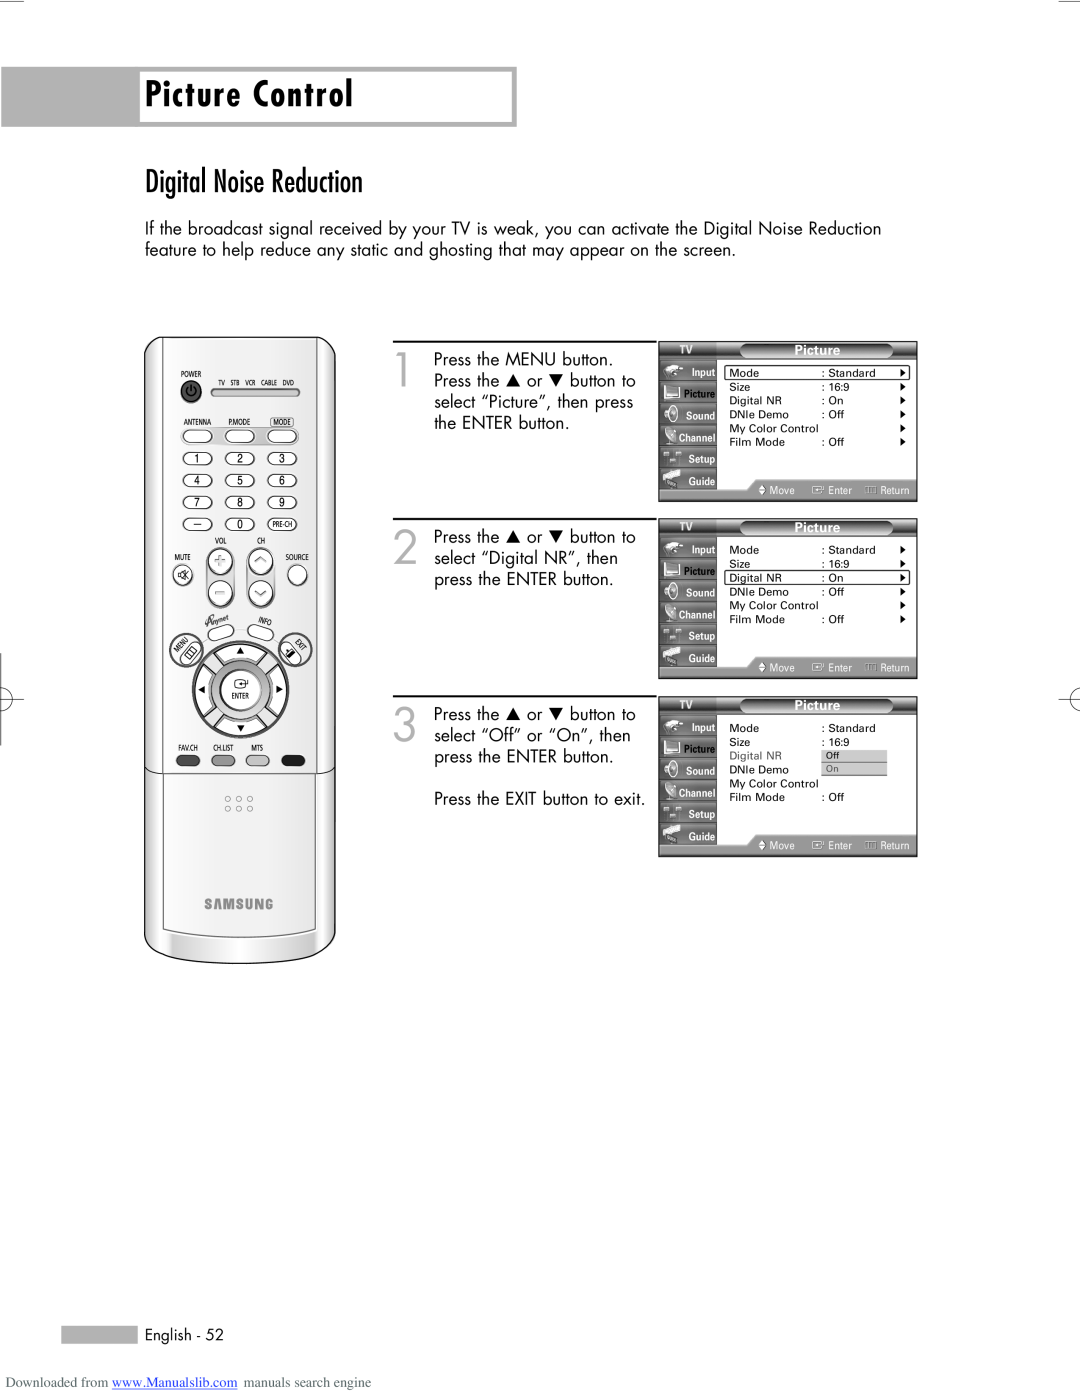 Samsung HL-R5656W, HL-R6156W, HL-R5056W manual Digital Noise Reduction, Picture Control, Digital NR 